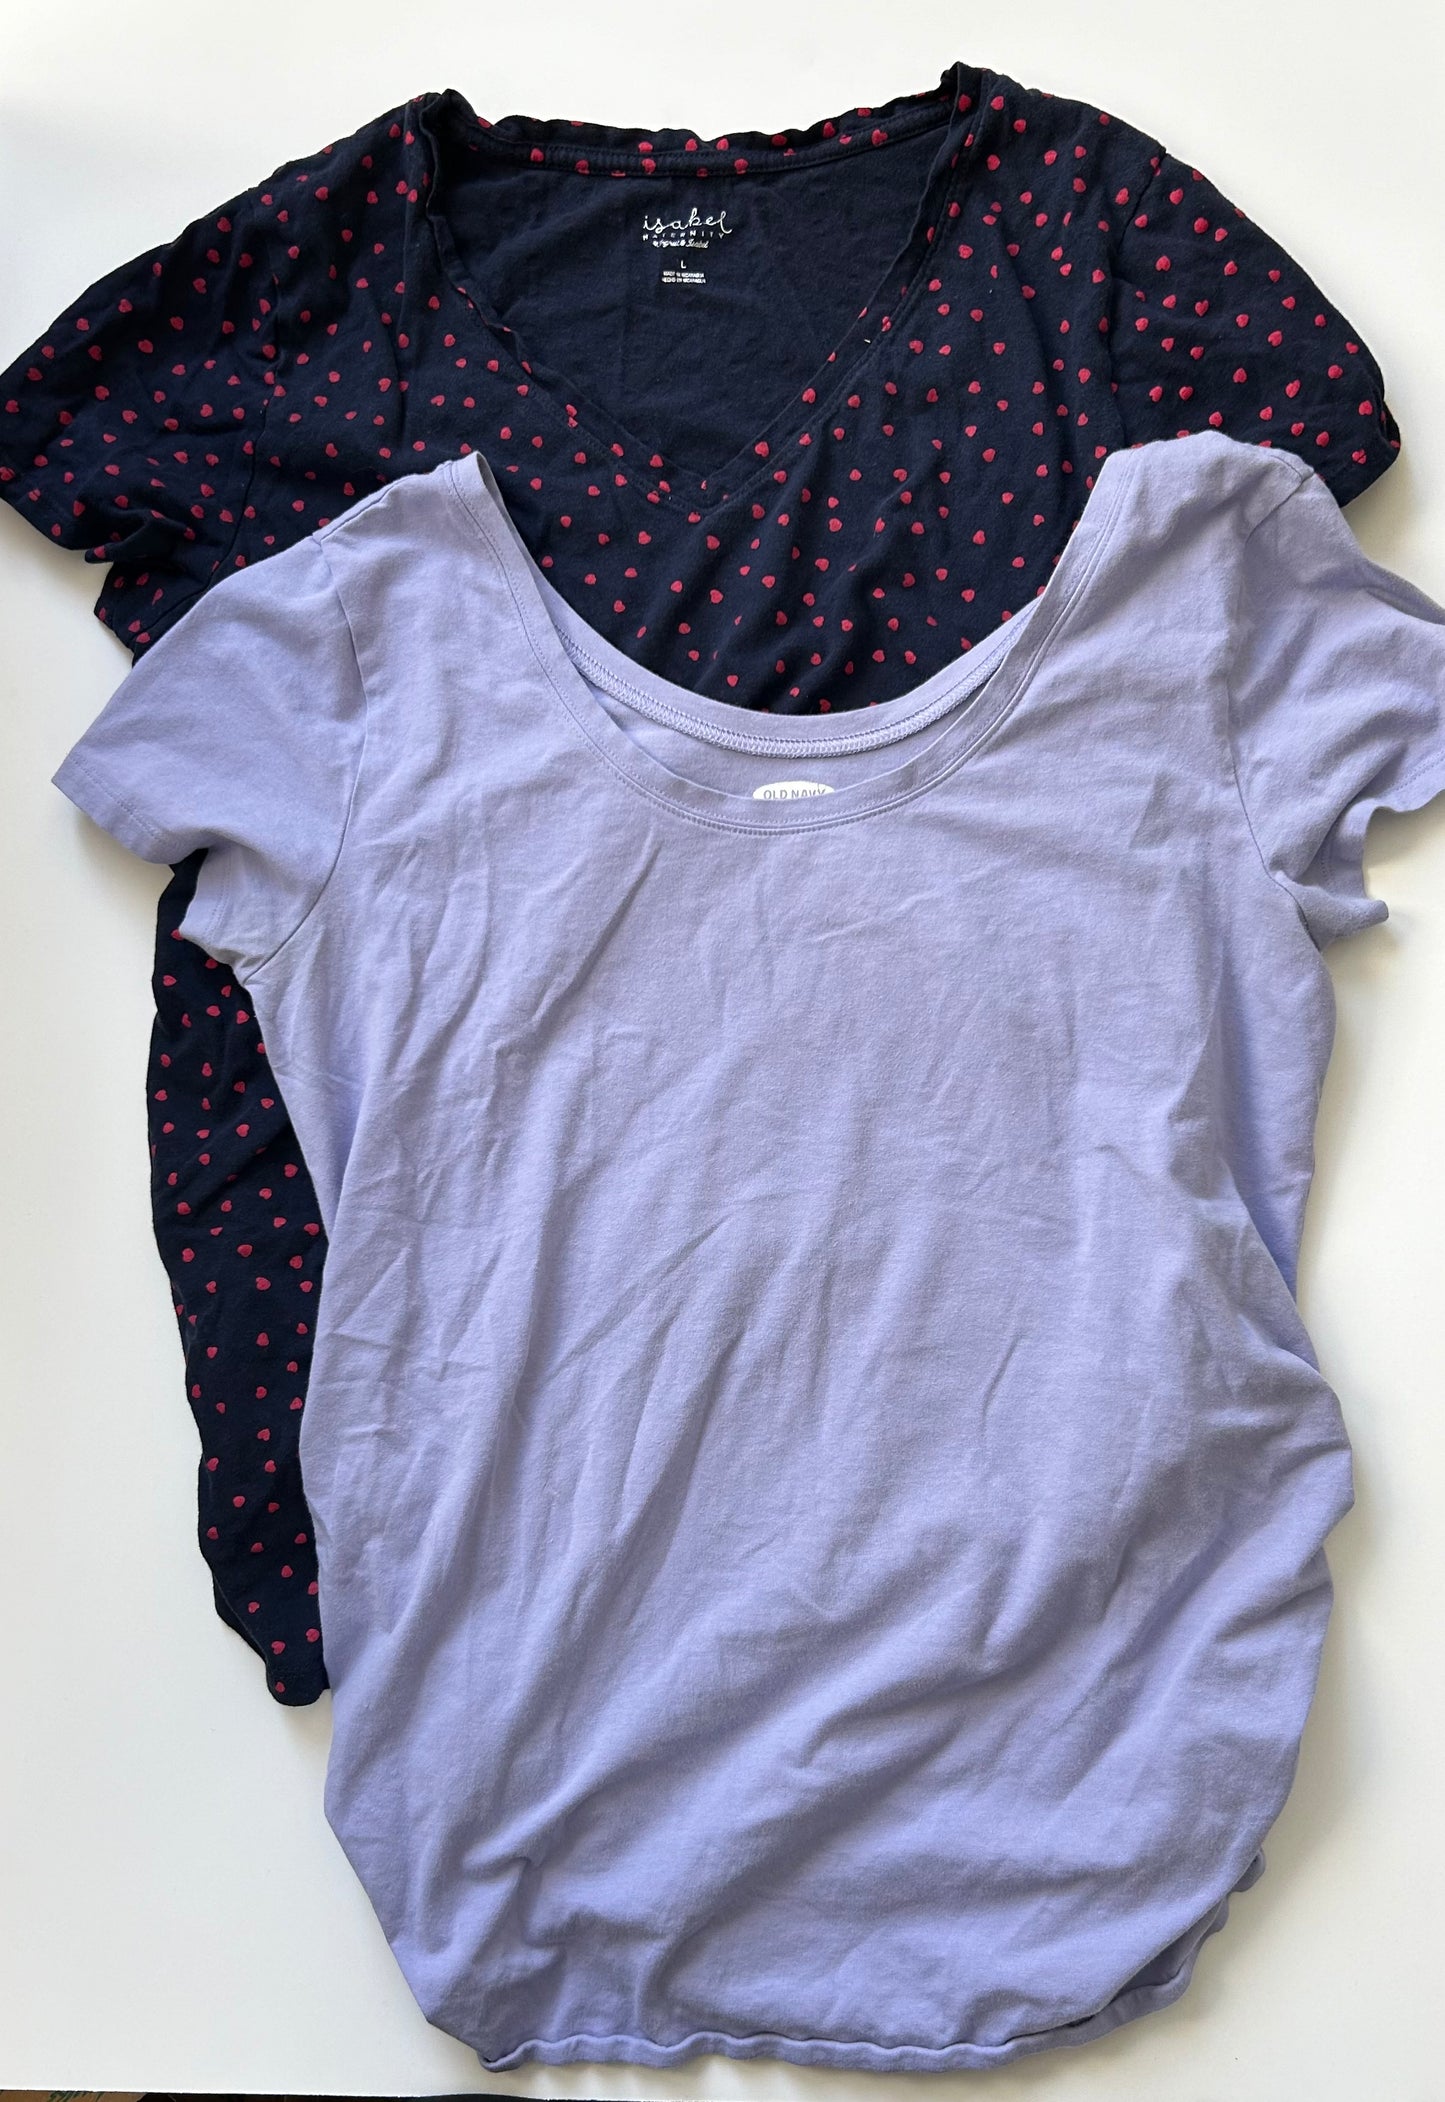 Size Large Maternity Short Sleeve Shirt Bundle (Old Navy and Isabel Maternity)